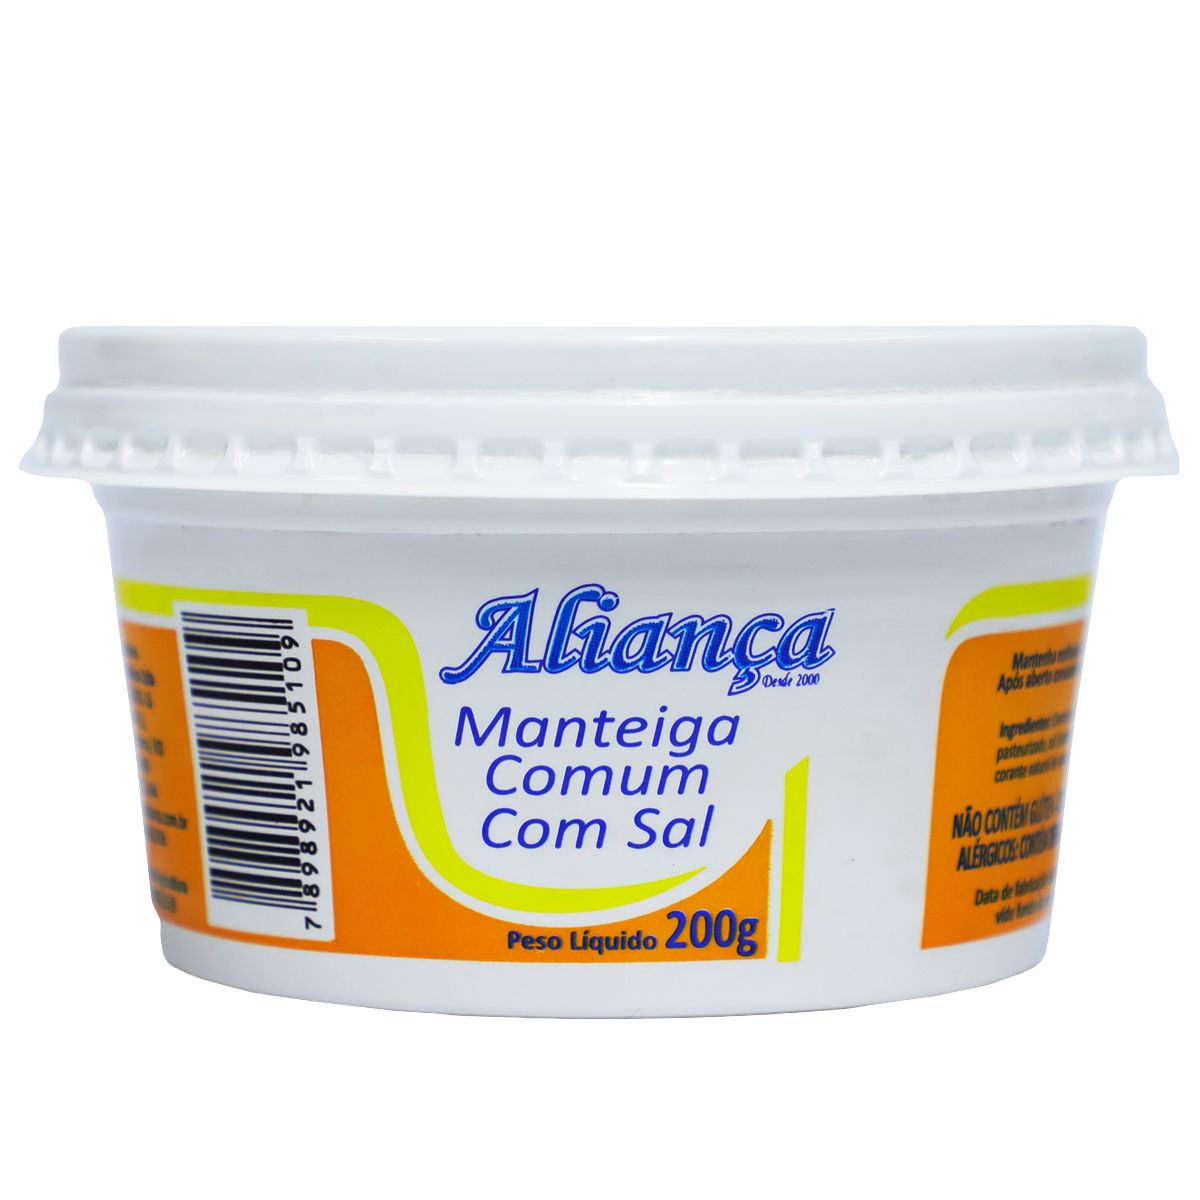 Manteiga Comum Aliança com Sal 200g image number 0